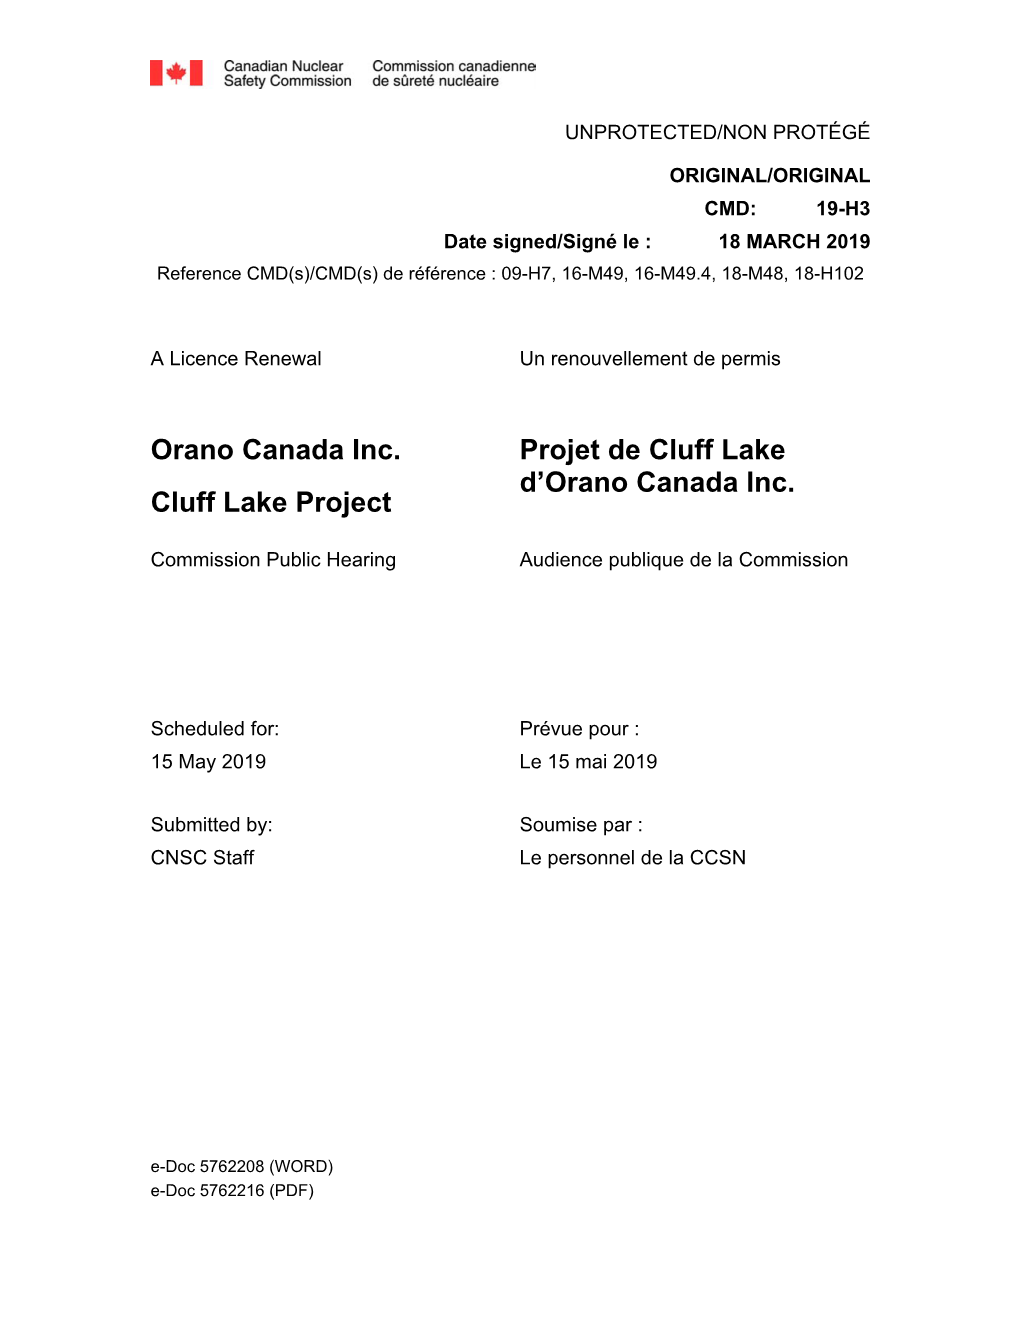 Orano Canada Inc. Cluff Lake Project Projet De Cluff Lake D'orano